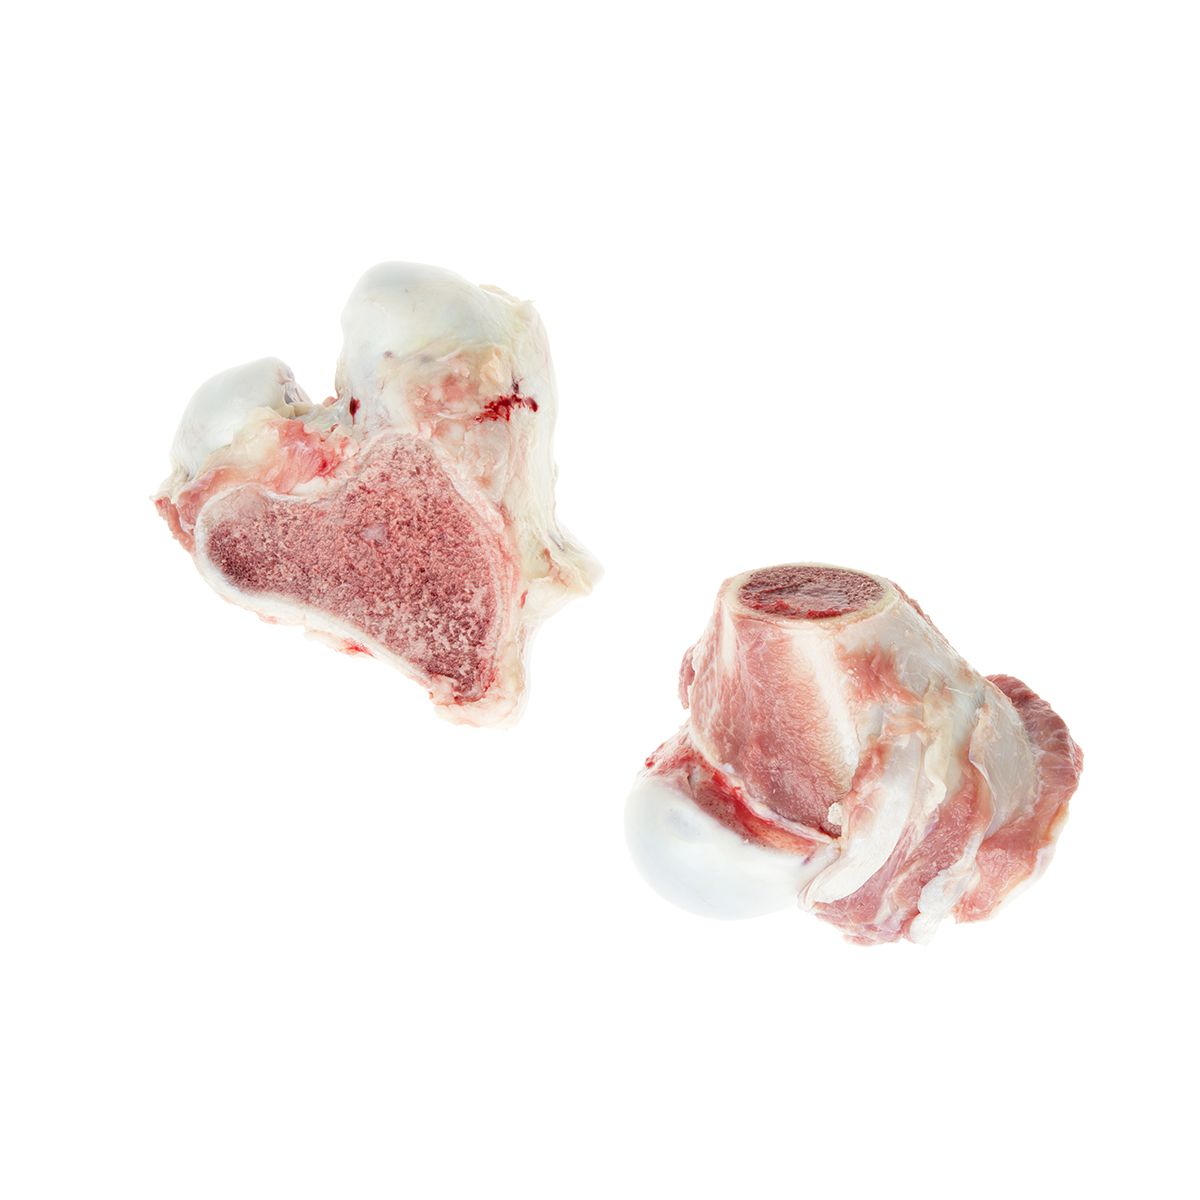 Atlantic Veal & Lamb Frozen Split Veal Knuckle Bones